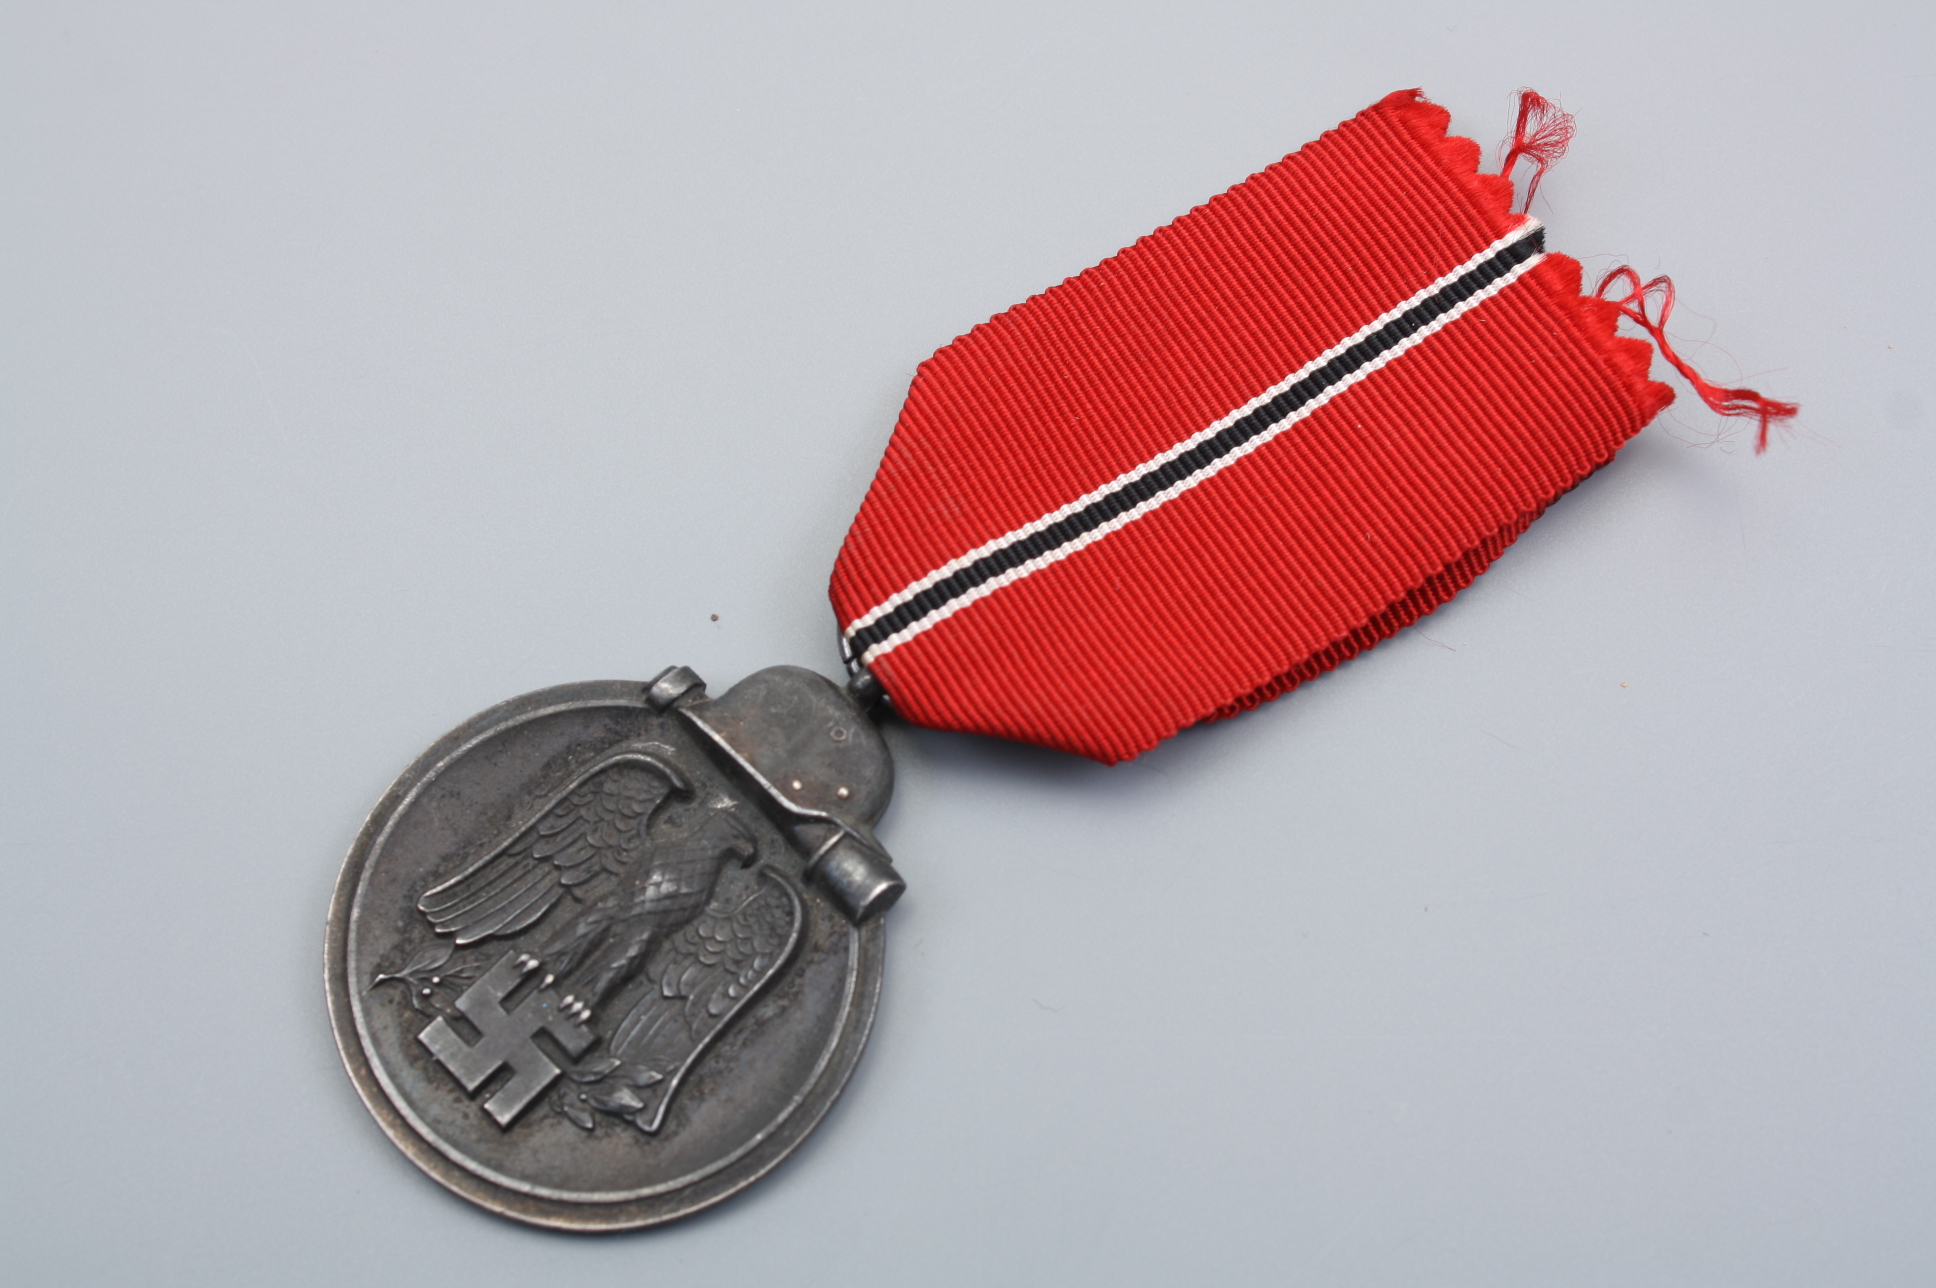 Медаль "За зимнюю кампанию" ("Мороженое мясо") 1941-1942 гг.,Германия.